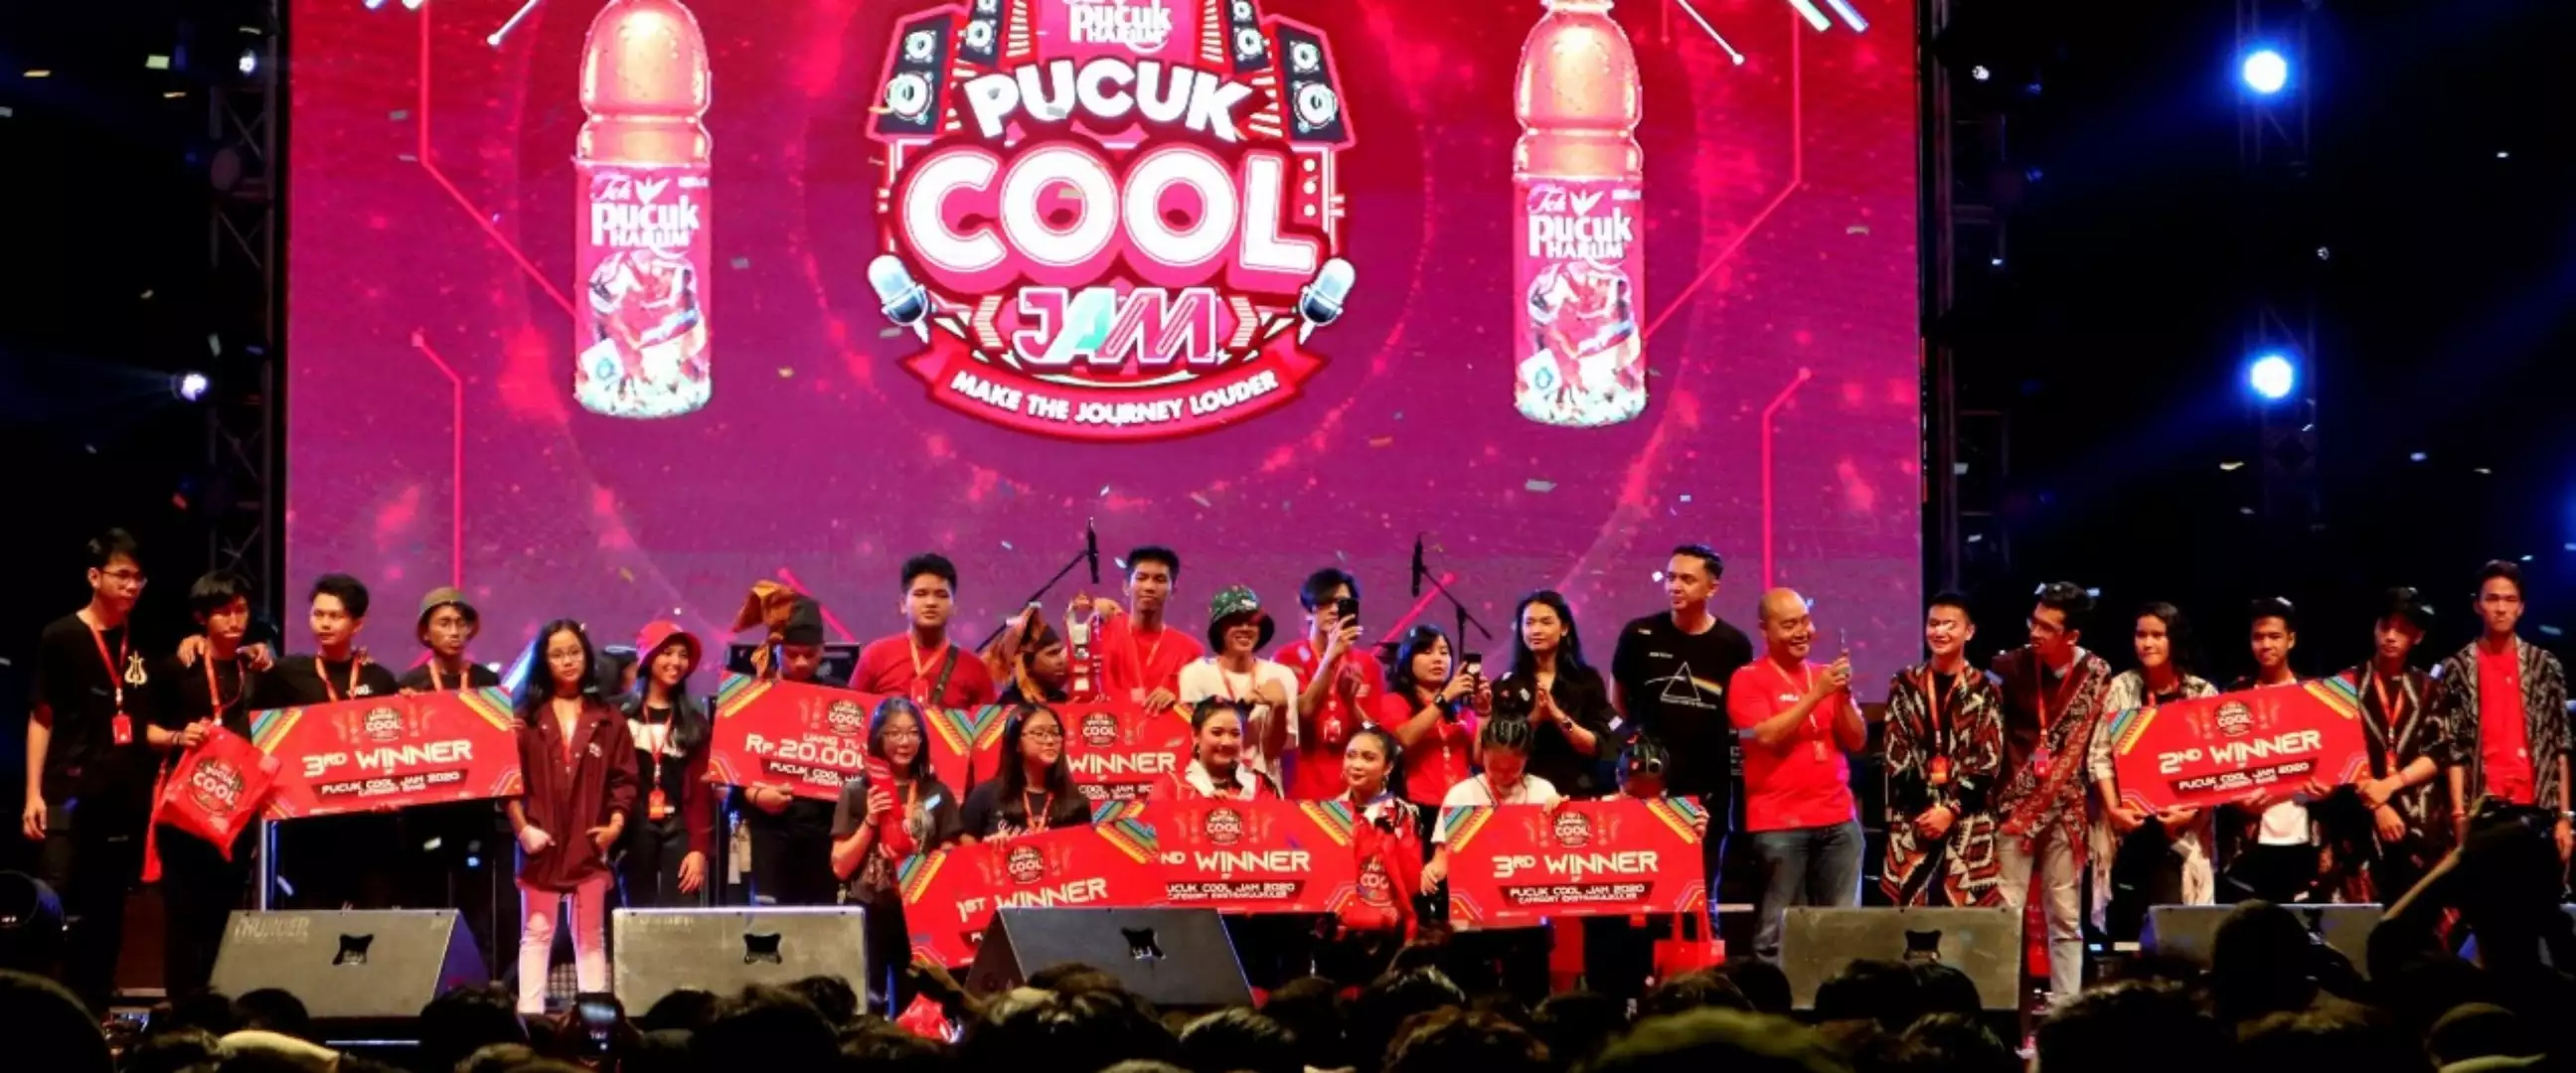 Nih 2 Juara Pucuk Cool Jam 2020 Make The Journey Louder